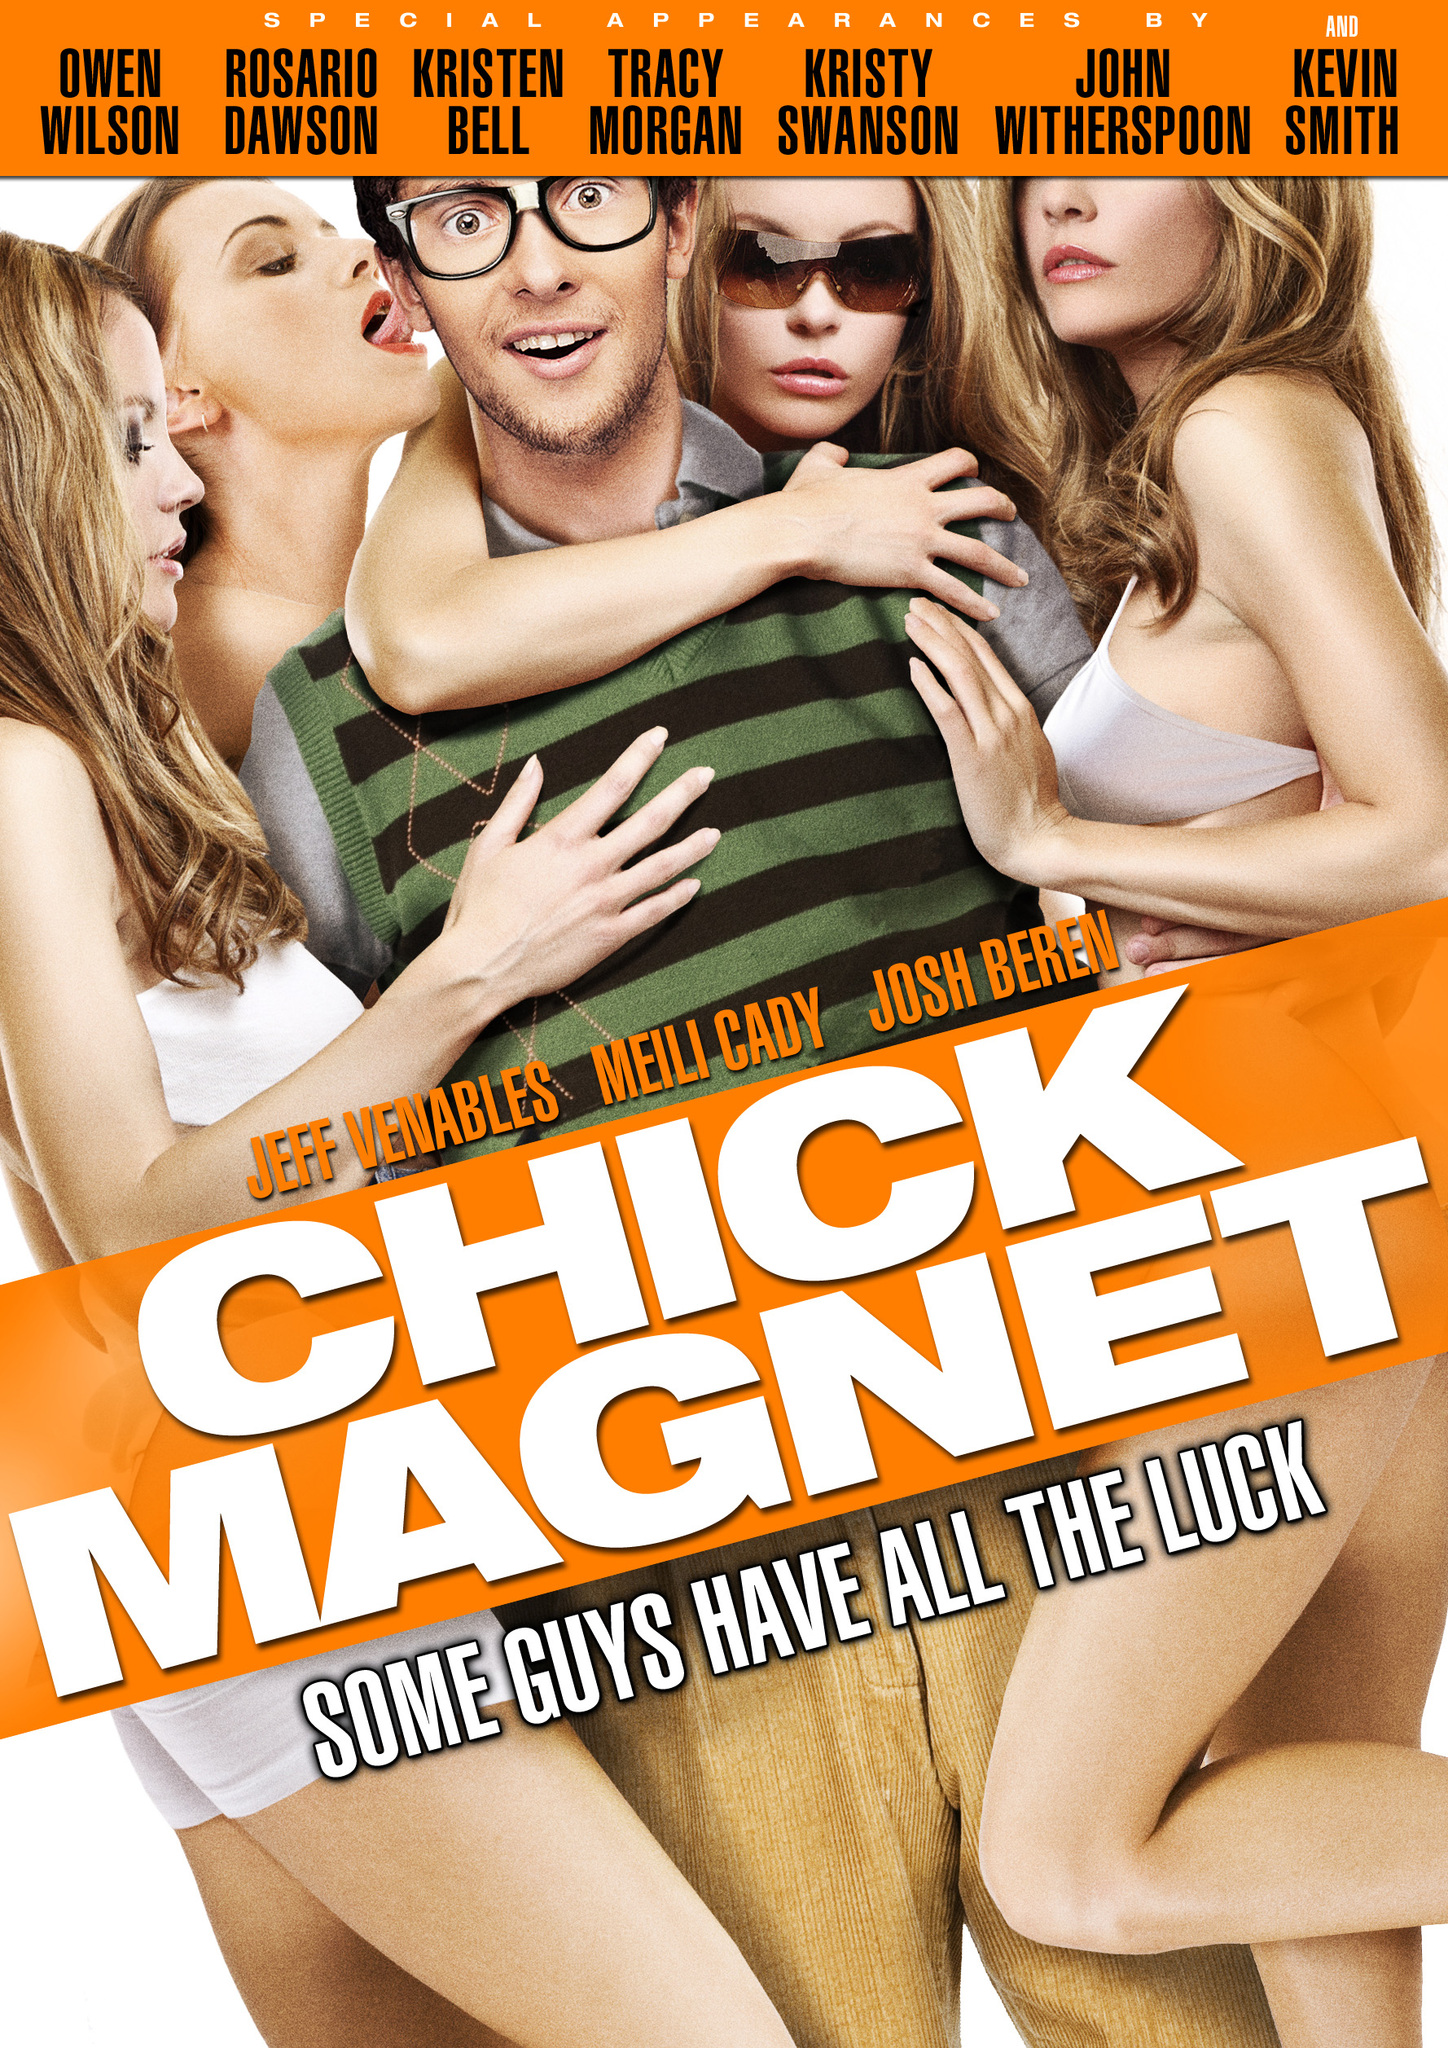 Chick Magnet (2011) Screenshot 1